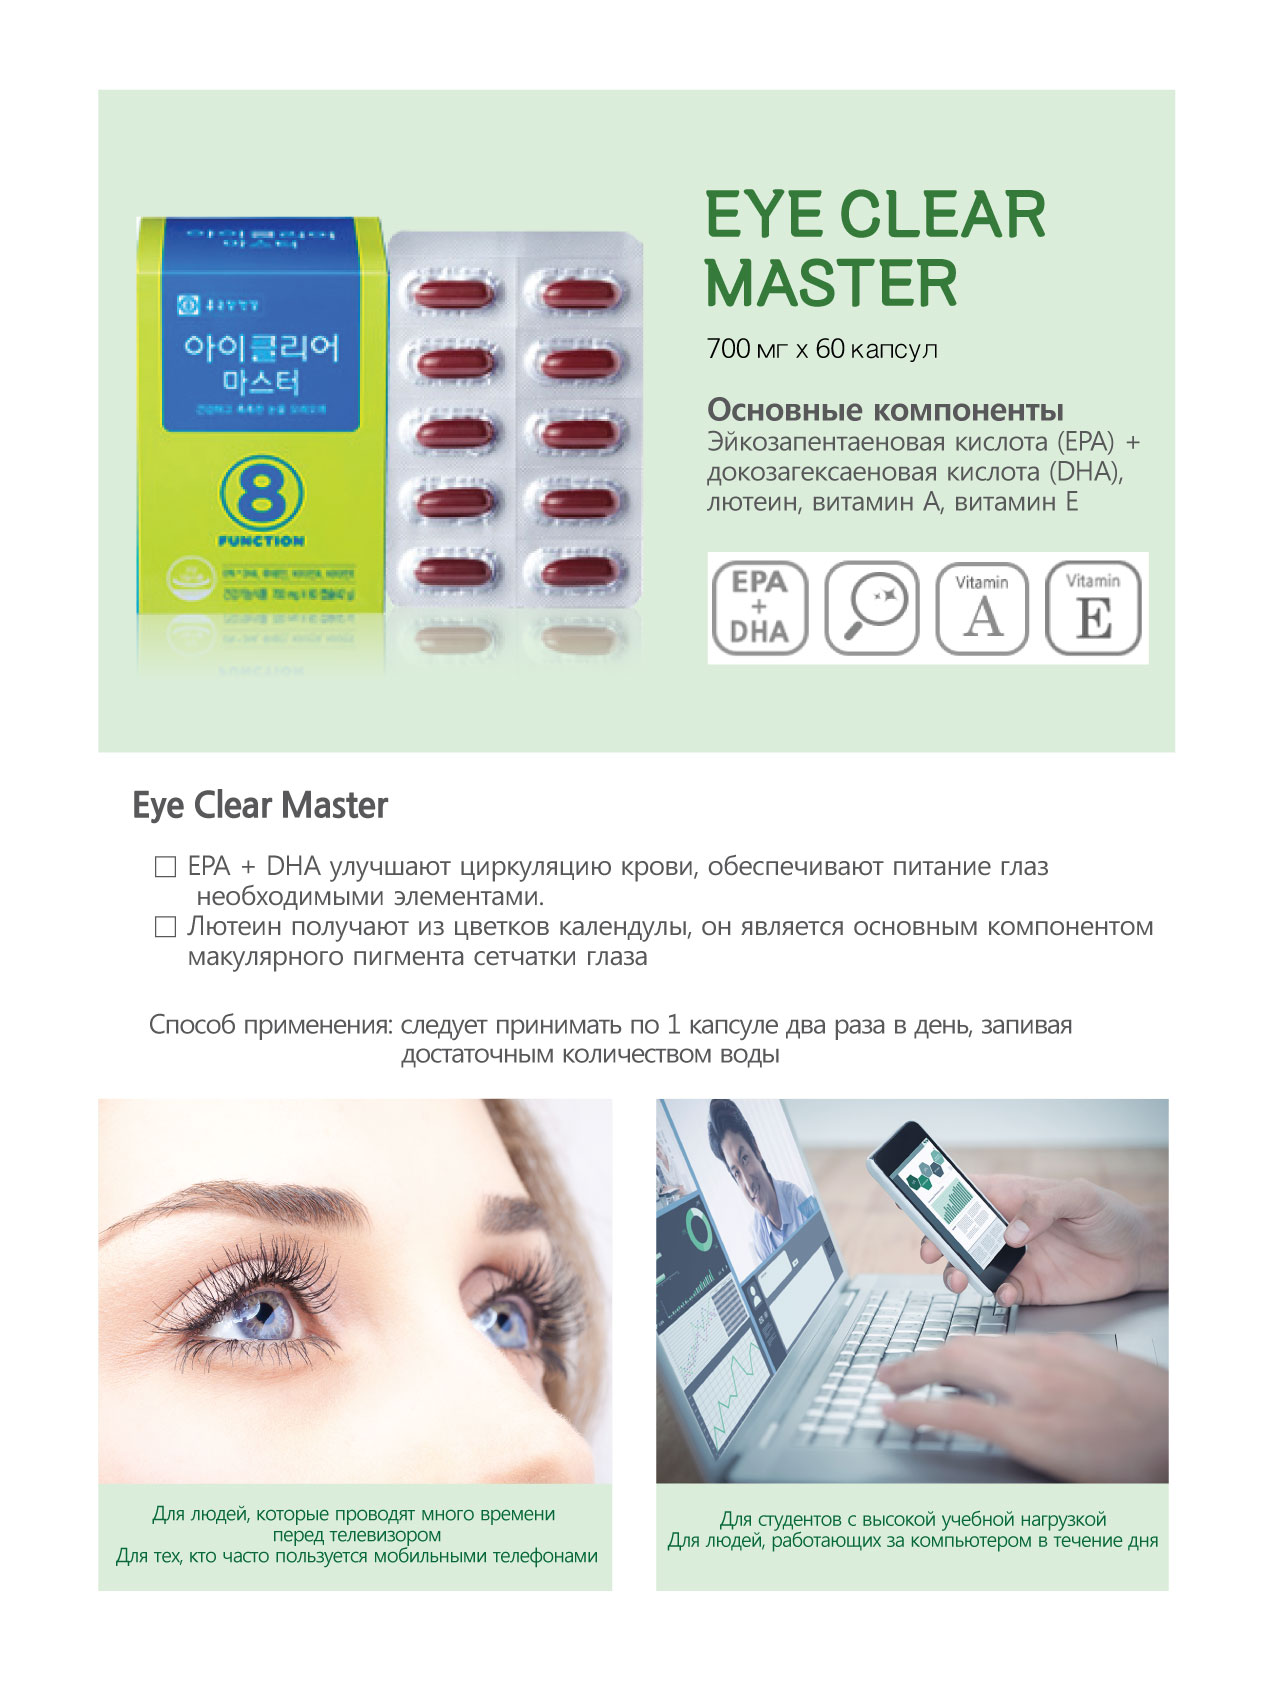 Eye Clear Master.jpg